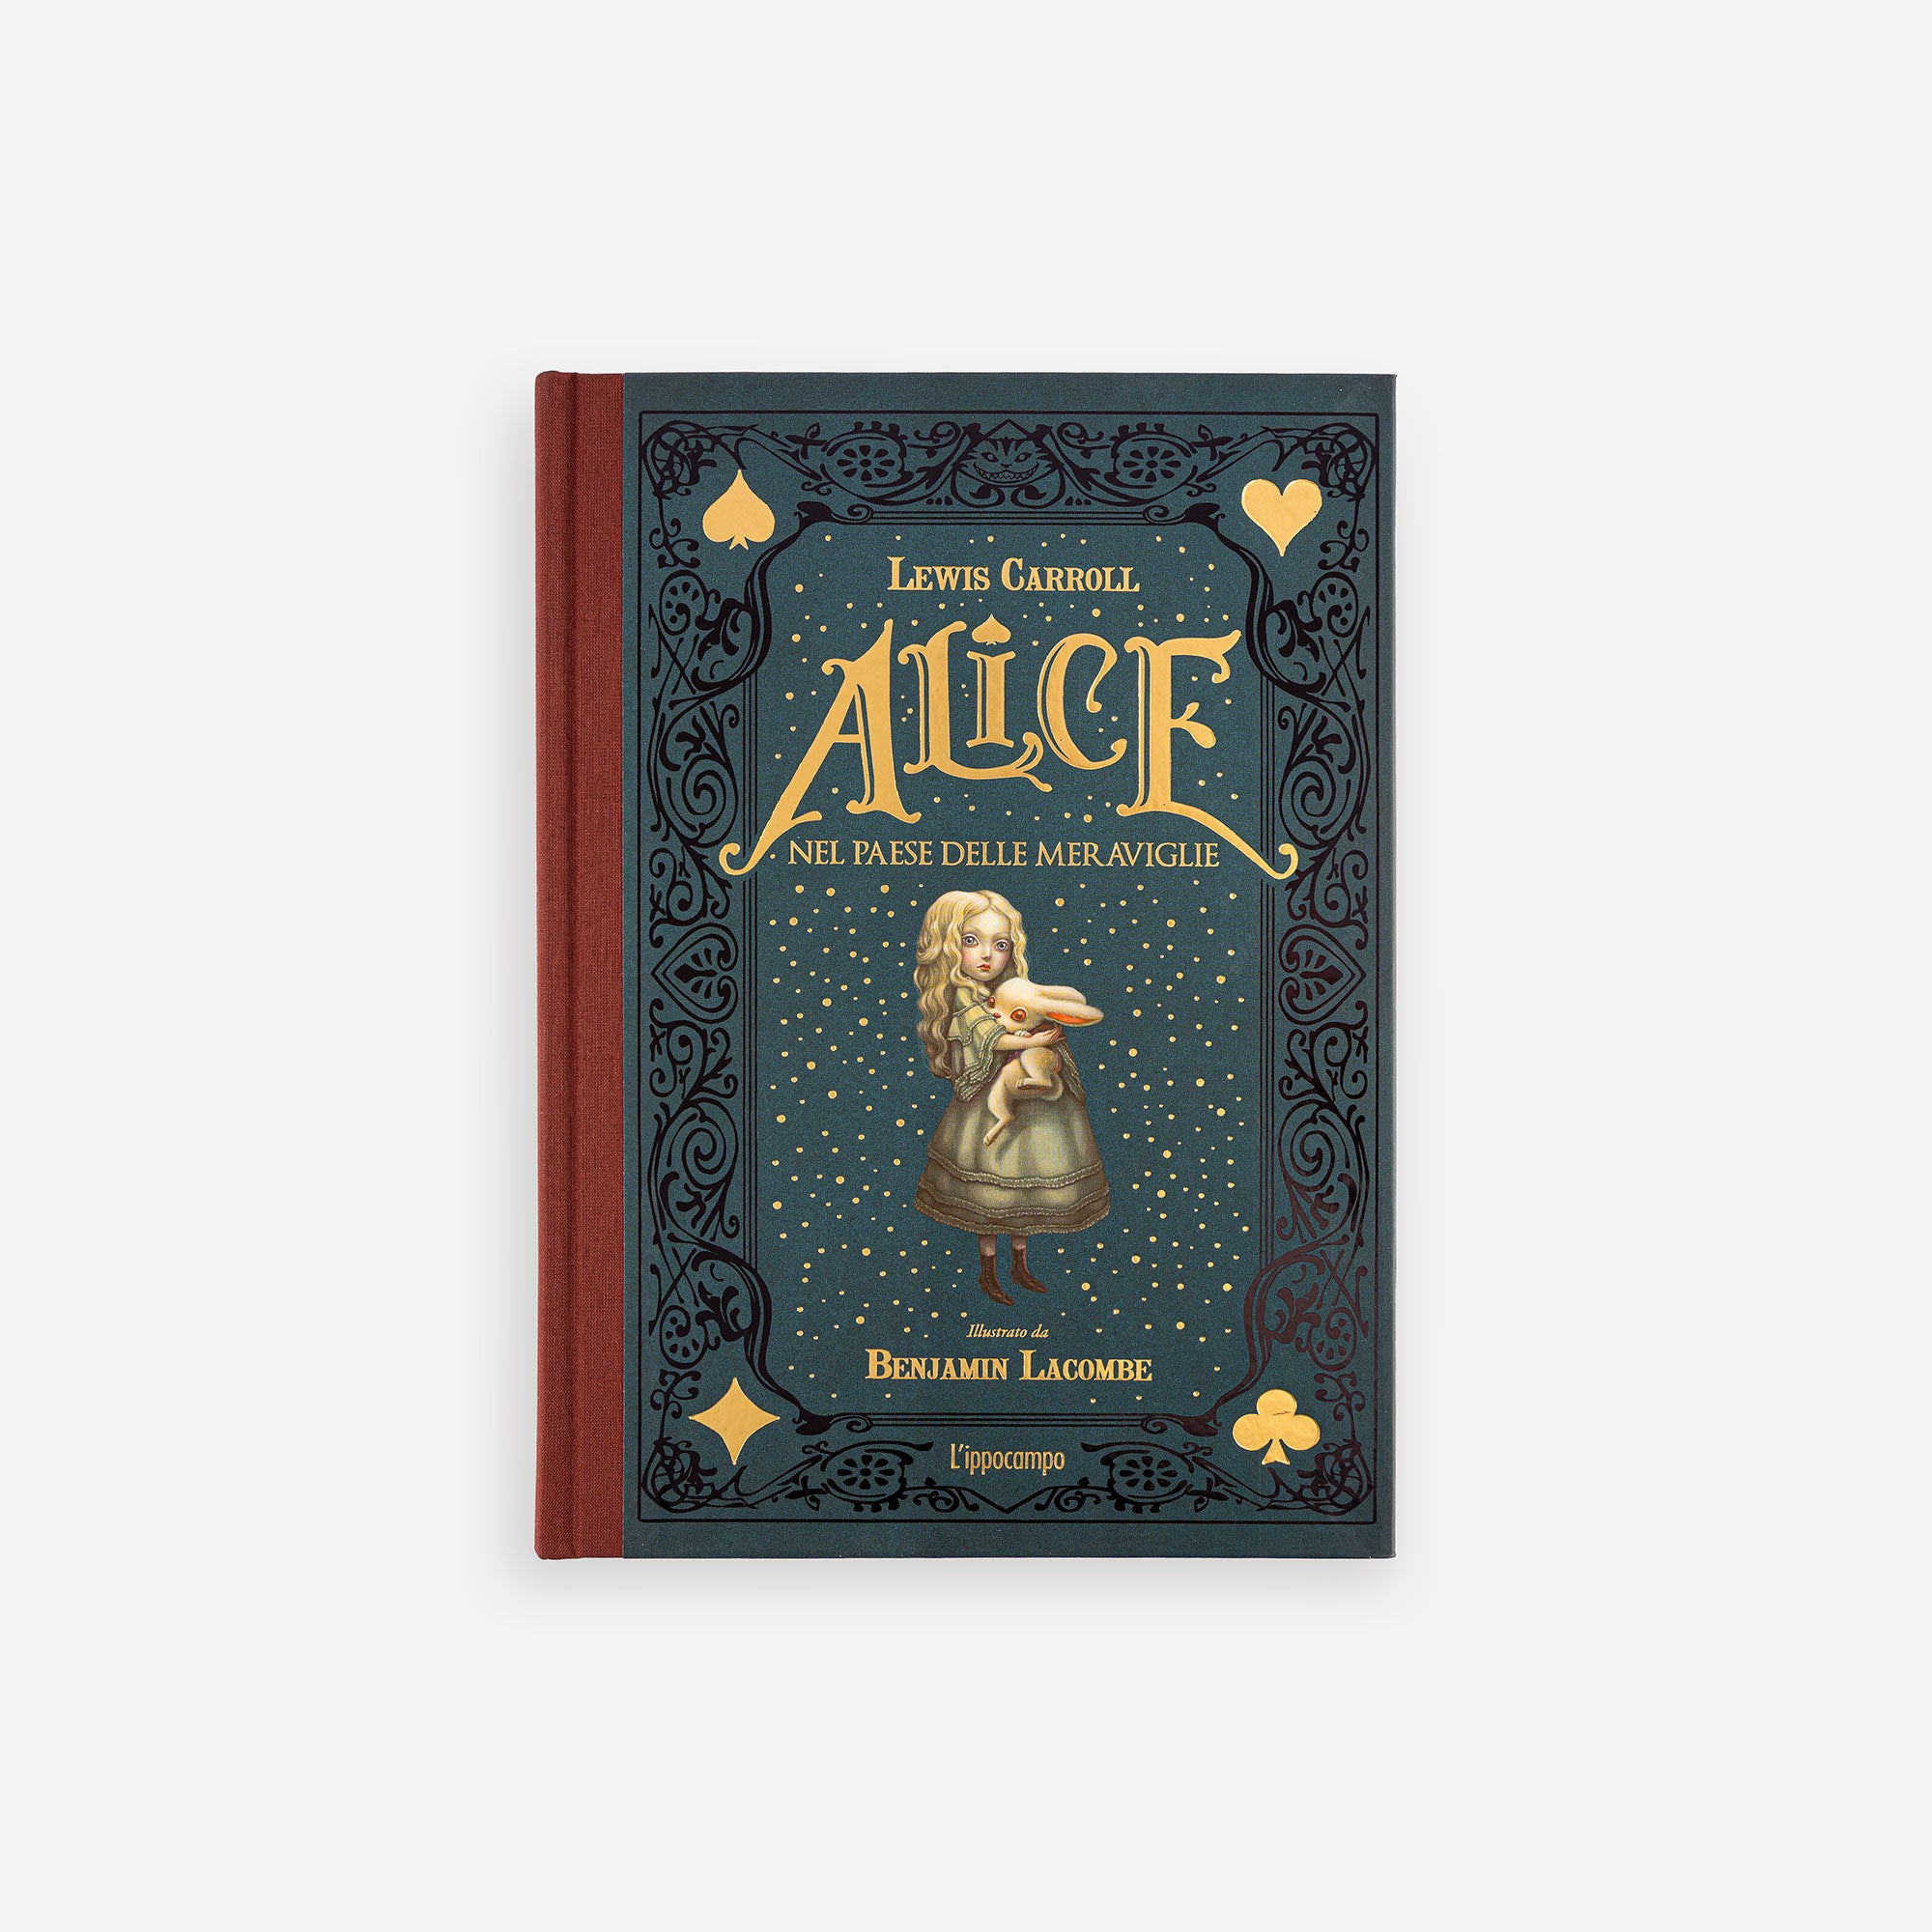 Alice nel paese delle meraviglie - Edizione integrale illustrata da Benjamin Lacombe